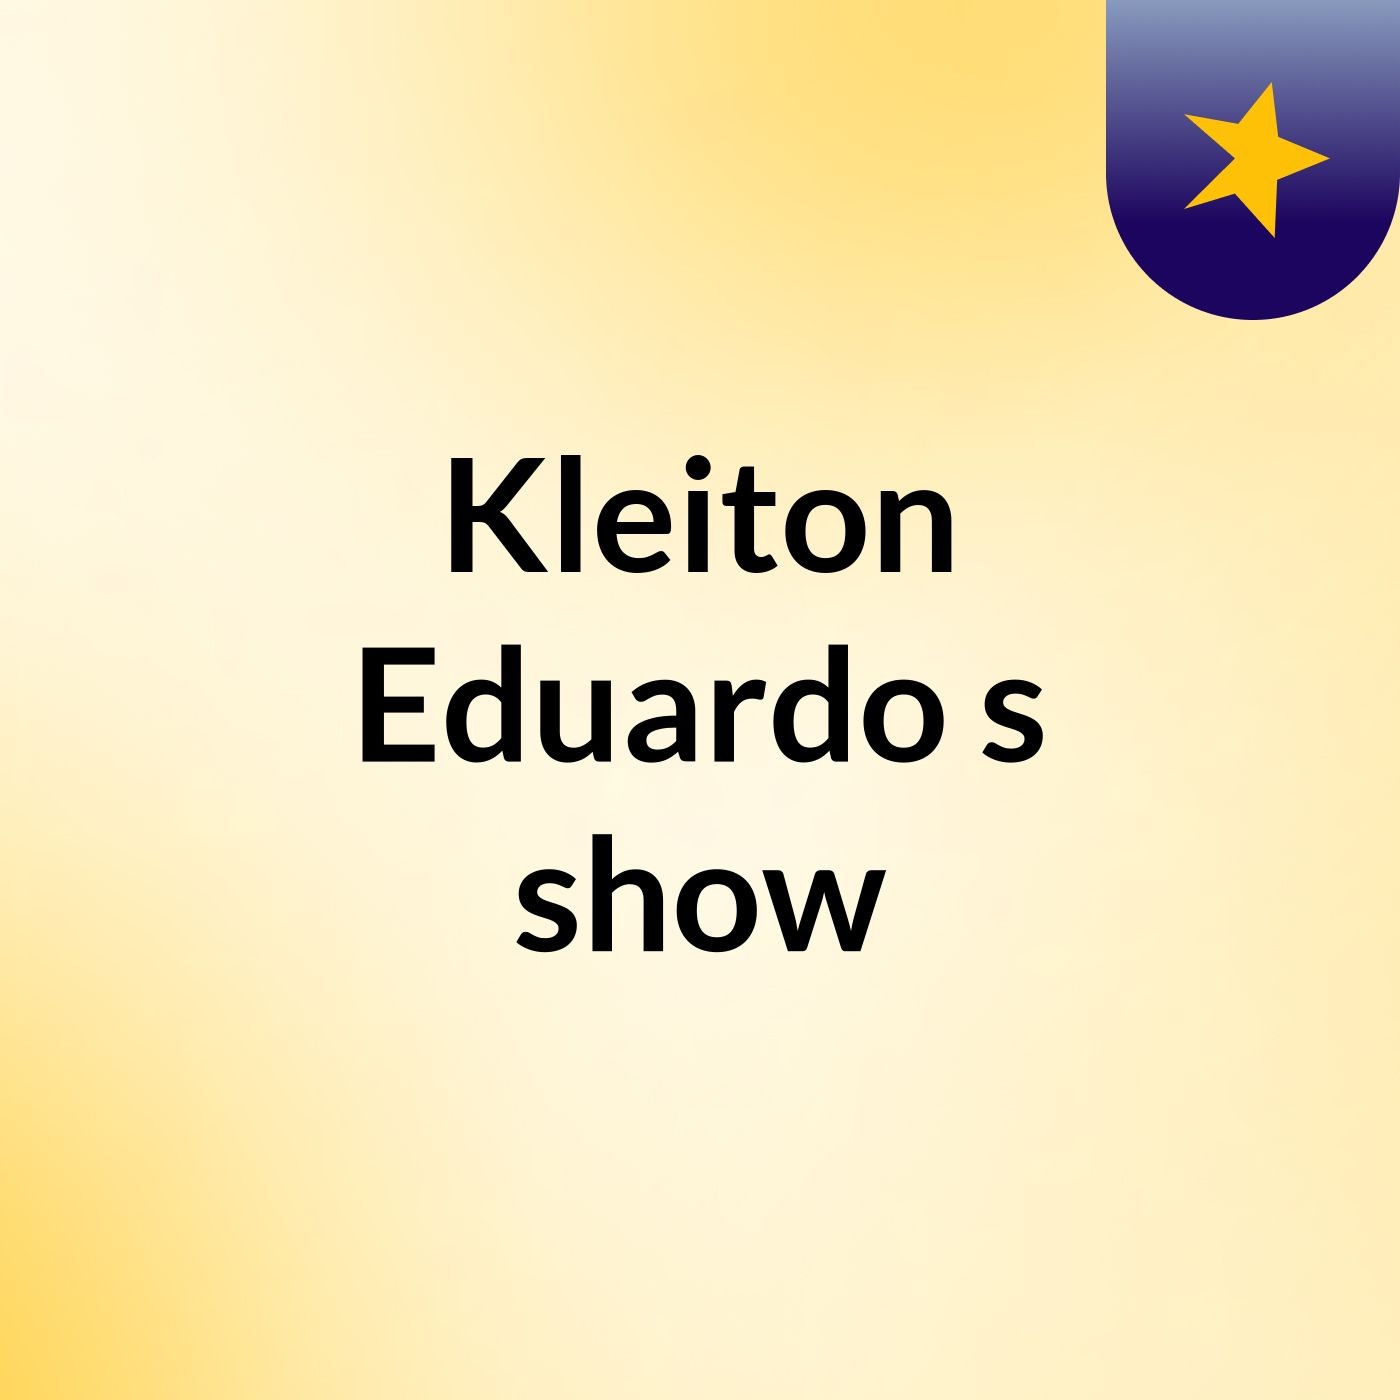 Kleiton Eduardo's show